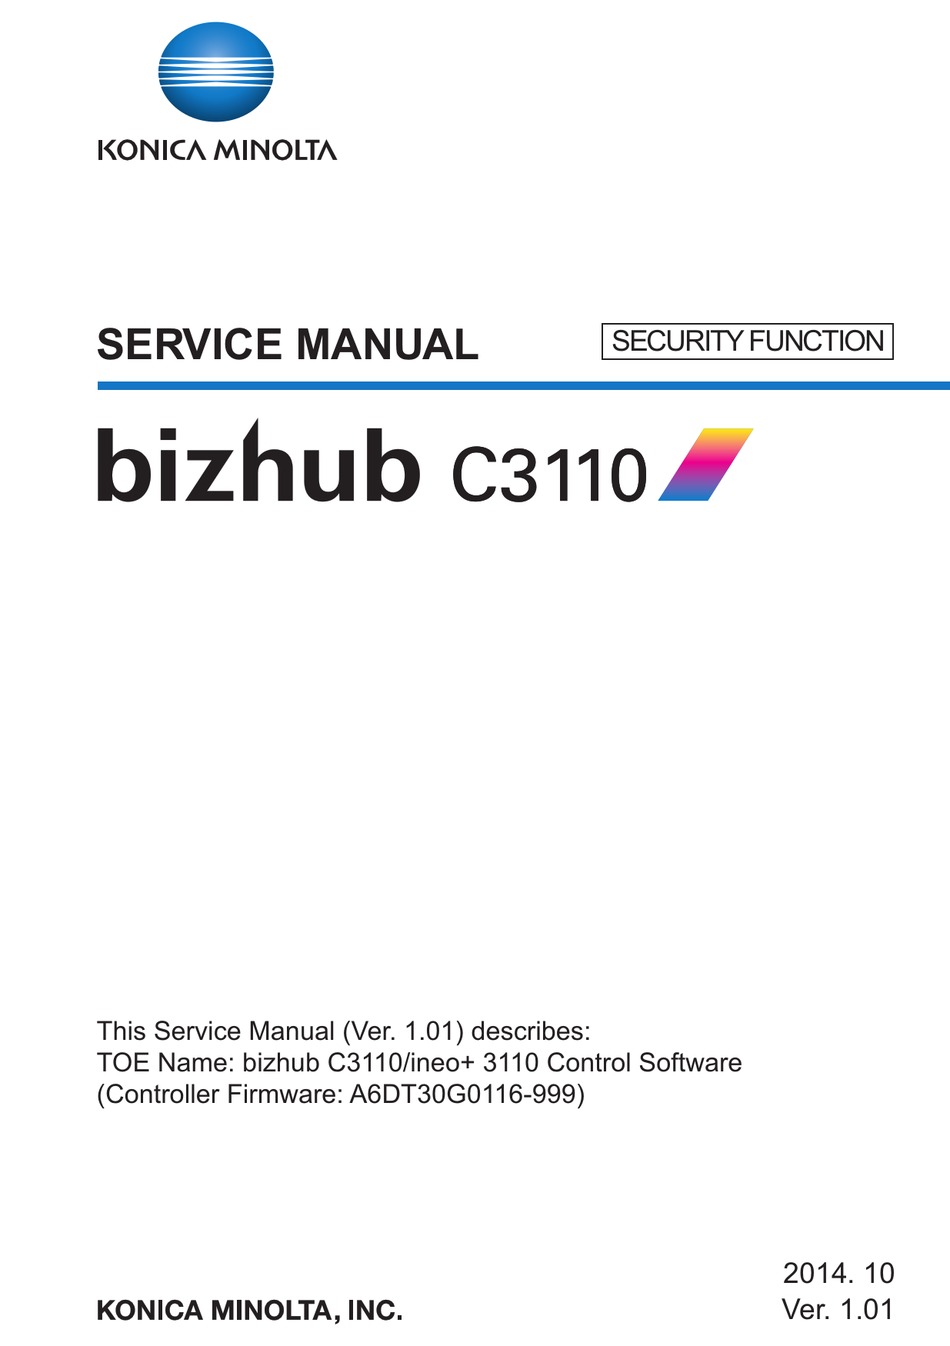 Biz Hub 3110 Printer Driver Free Download : Konica Minolta Bizhub C3110 Driver And Firmware ...